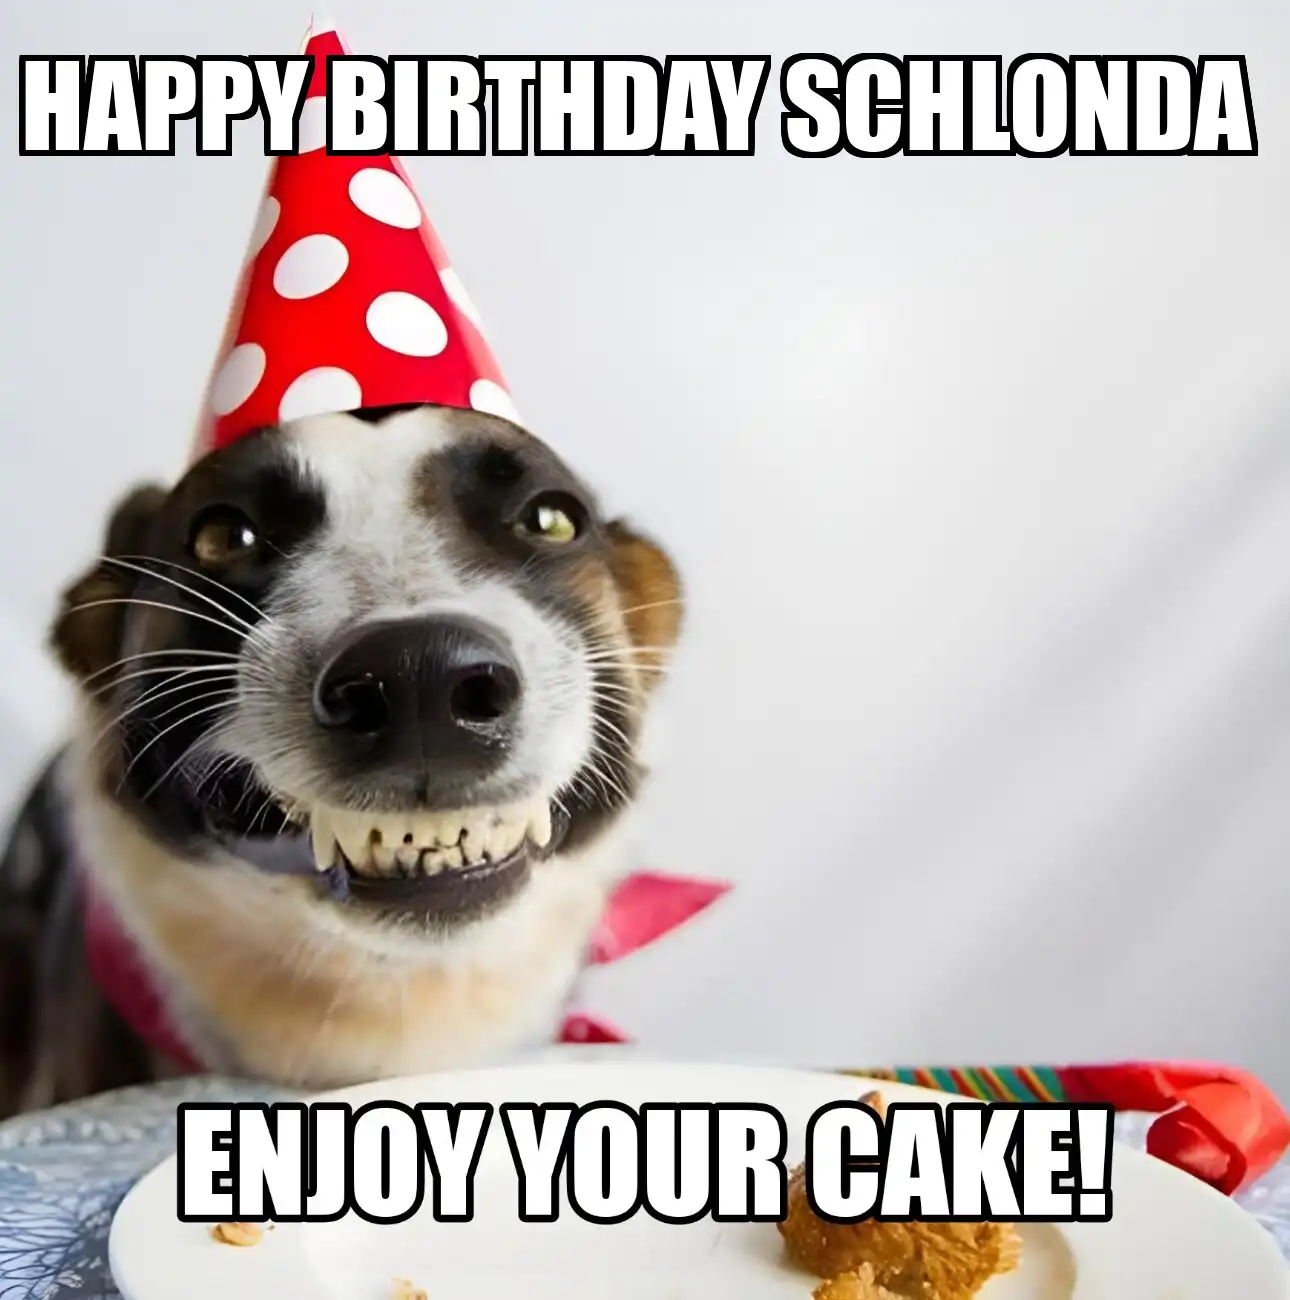 Happy Birthday Schlonda Enjoy Your Cake Dog Meme